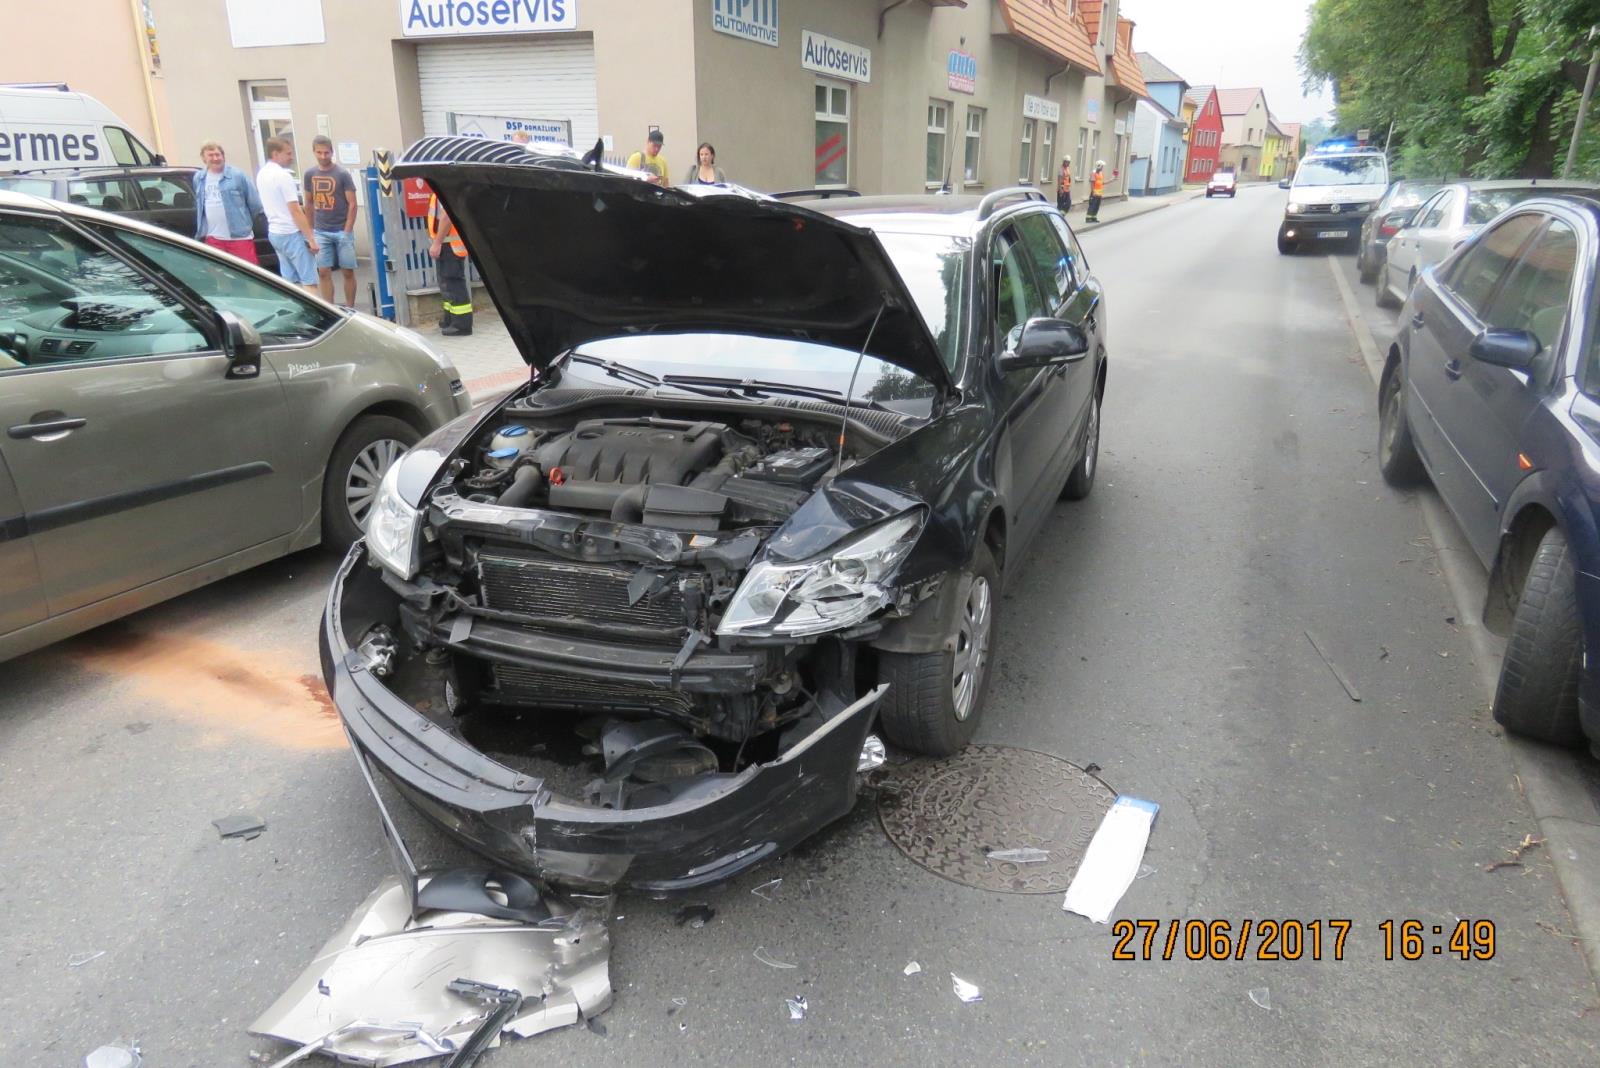 Dopravní nehoda - Domažlice - 27.06.2017